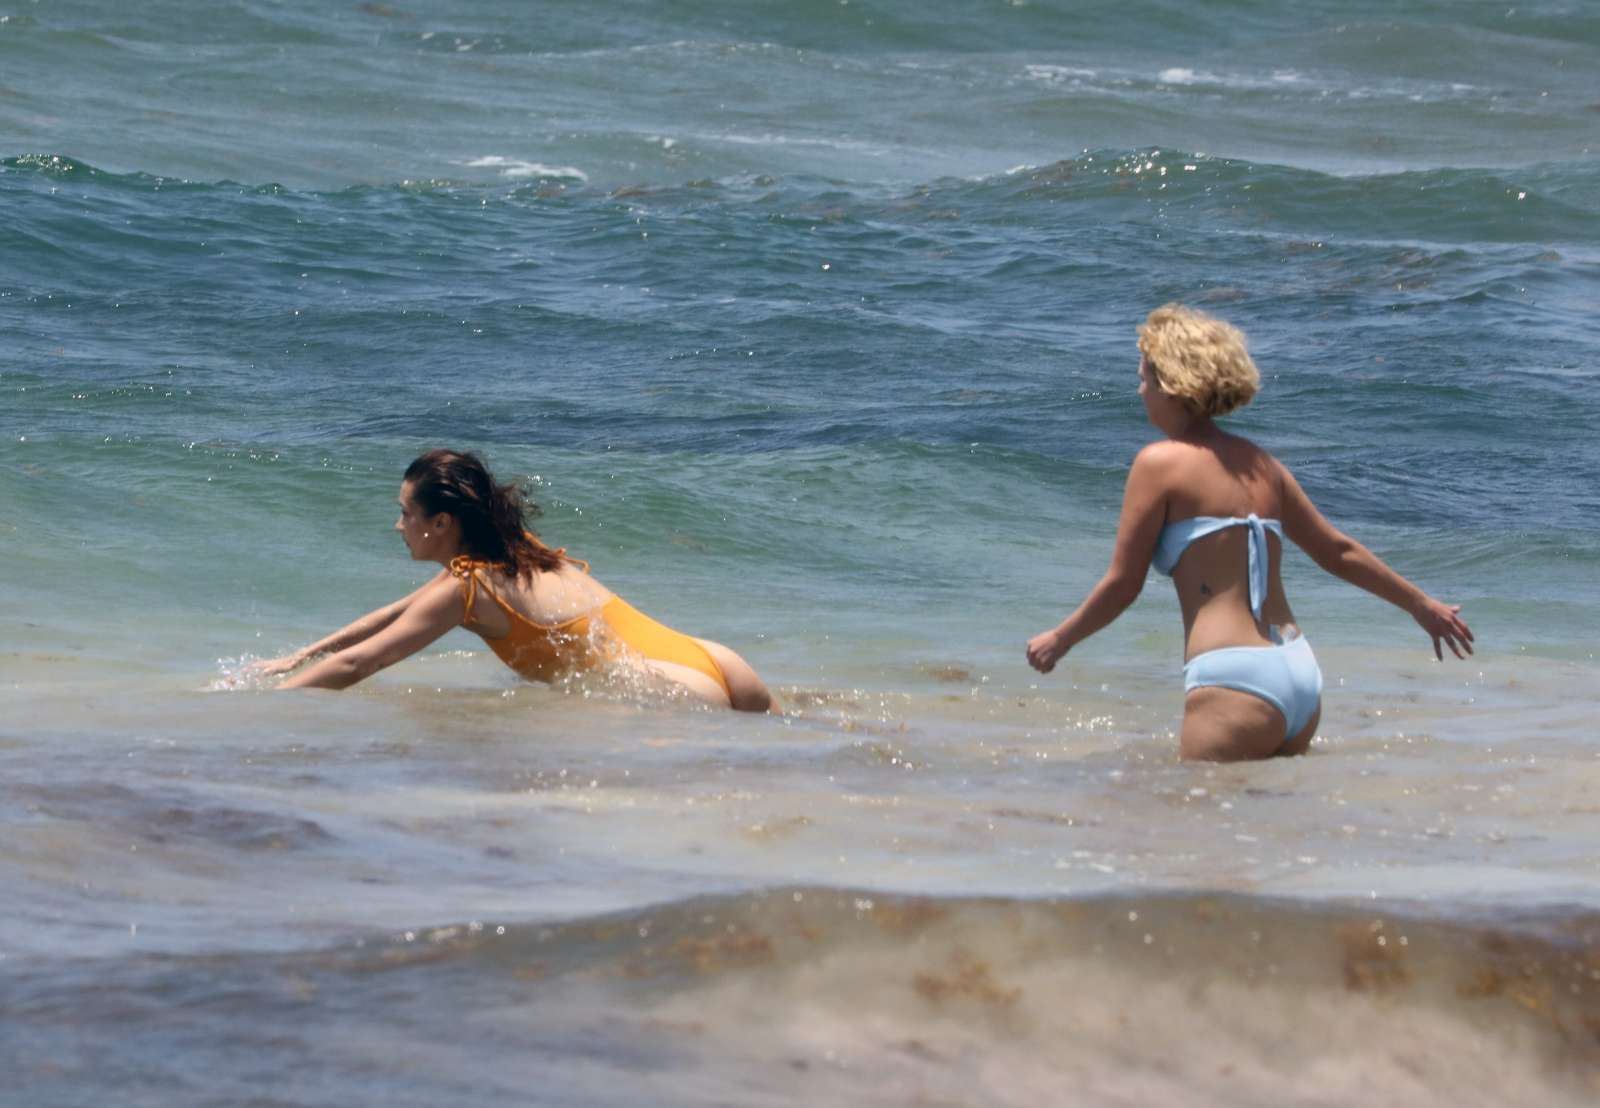 Bella Hadid in Orange Swimsuit on the beach in Cancun